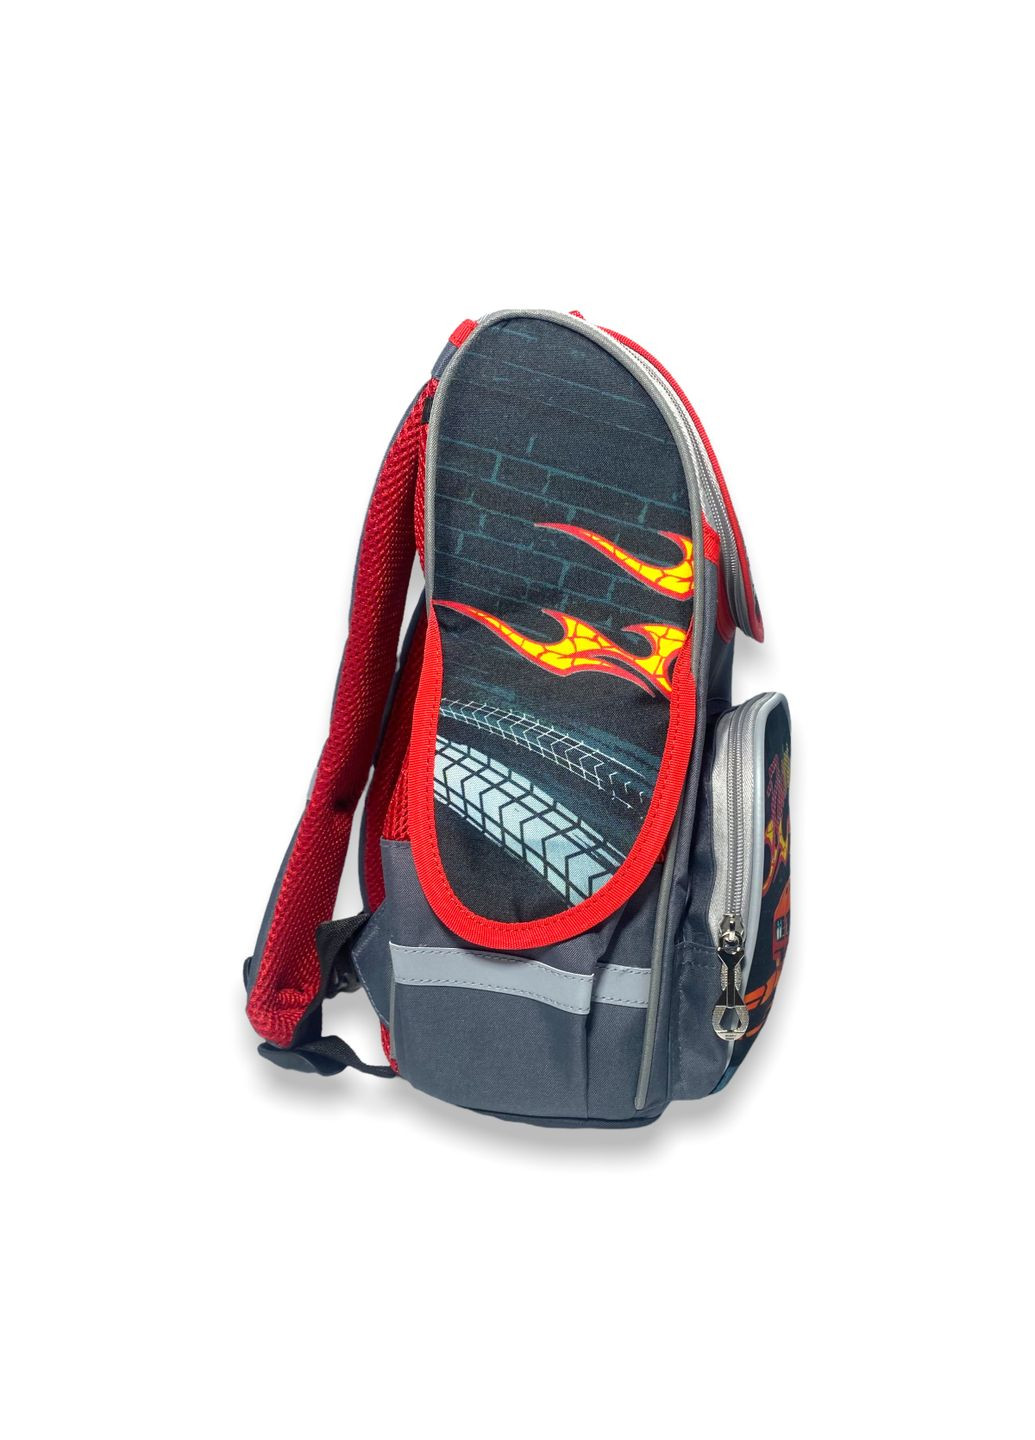 Шкільний ранець, рюкзак для хлопчика 14 клас 988981 світловідбивачі розміри: 35*25*13см, чорно-червоний Space (284337855)